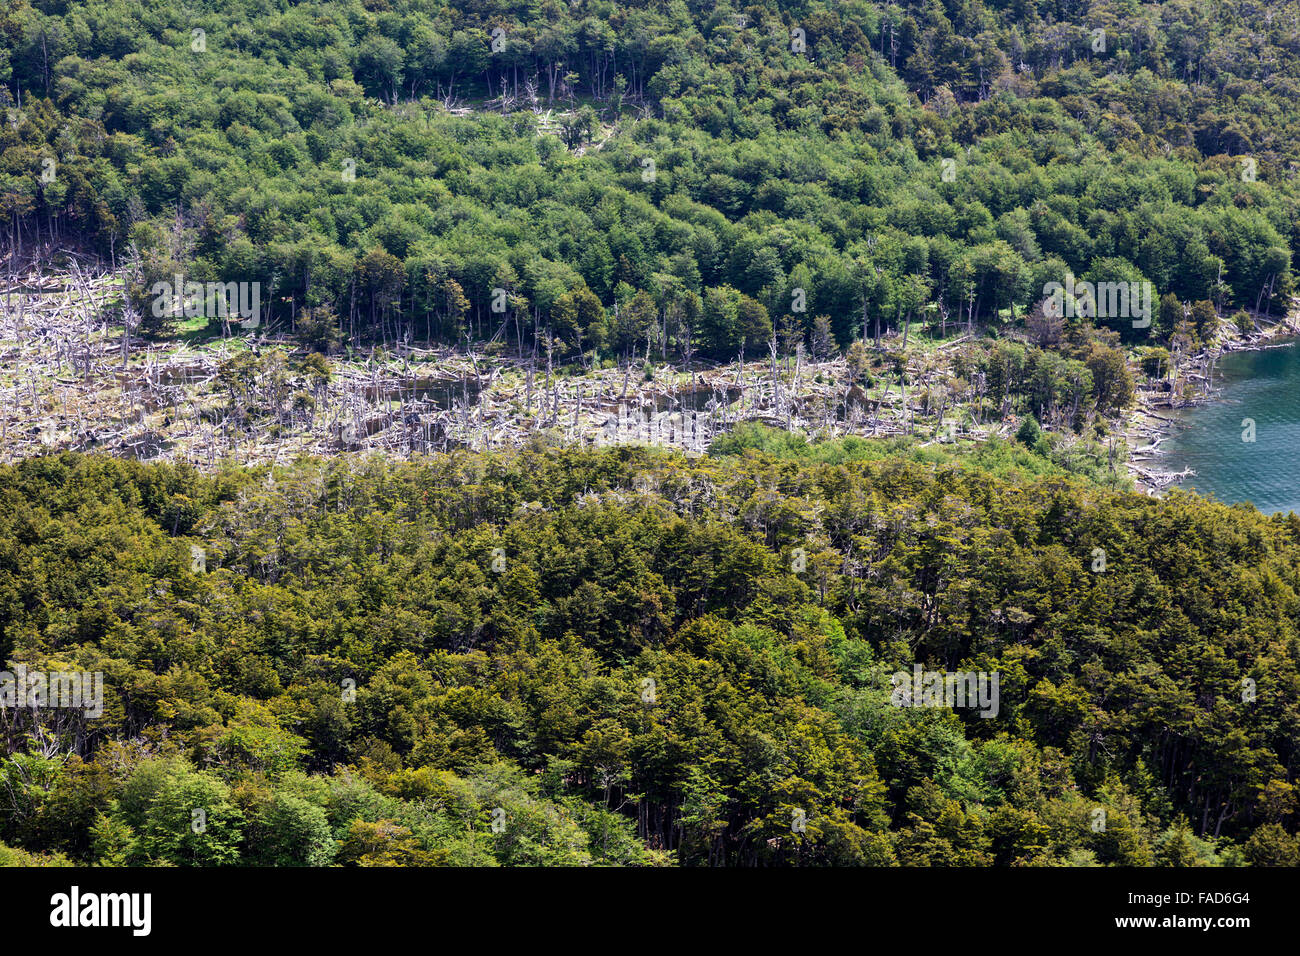 Luftaufnahme von toten Bäumen durch Biber, Biber verursachten Schäden, in der Nähe von Ushuaia, Feuerland, Patagonien, Argentinien Stockfoto